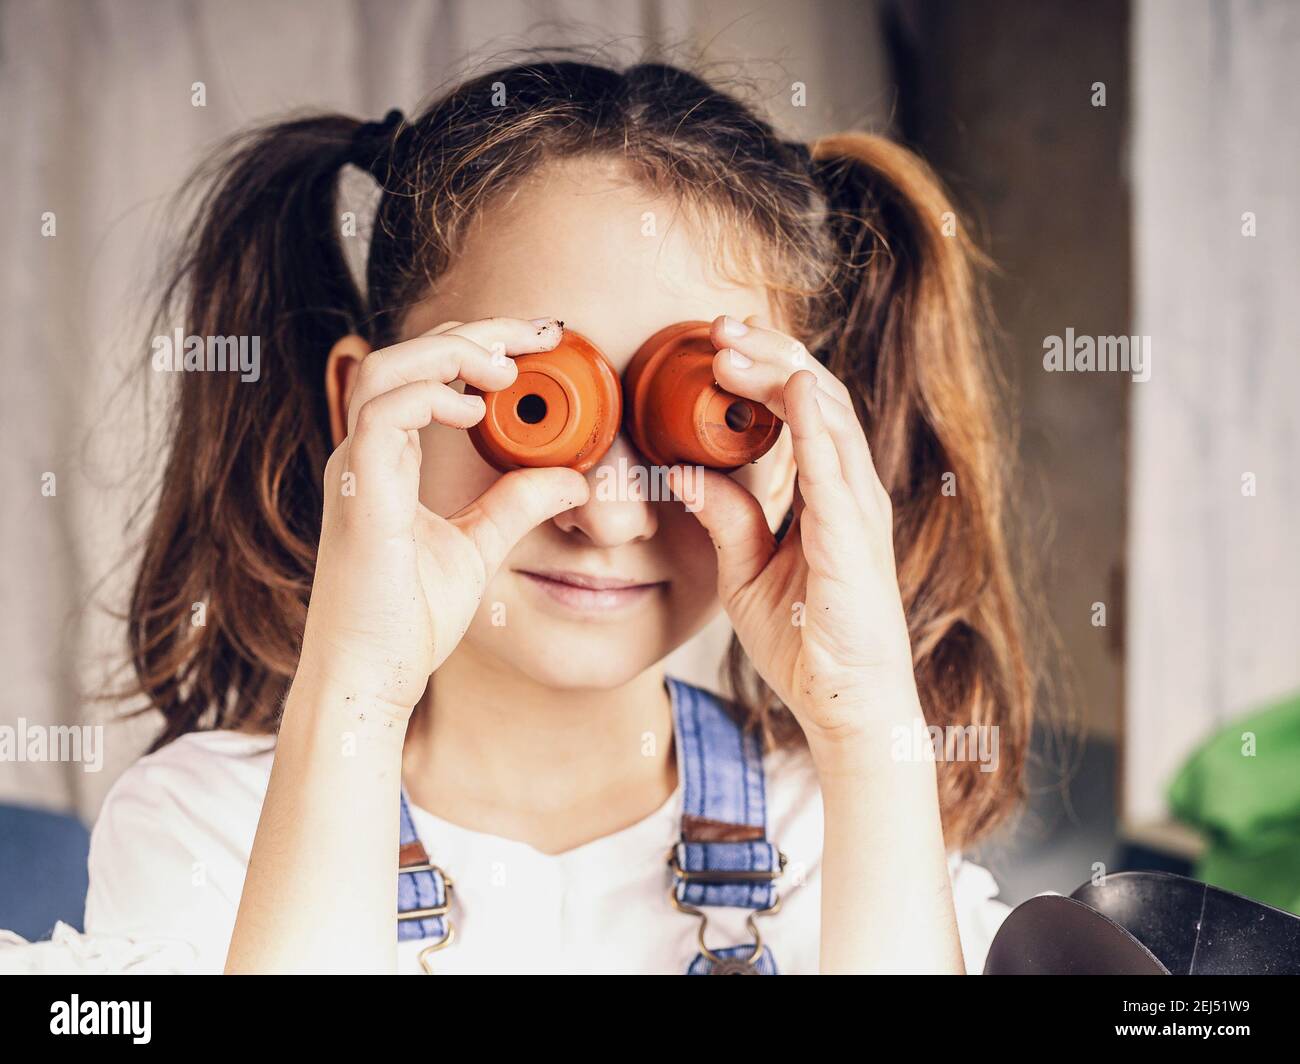 mignon petite fille a l'amusement en utilisant des pots de fleurs comme lunettes. amusement d'enfant, moments heureux. race blanche. gros plan Banque D'Images